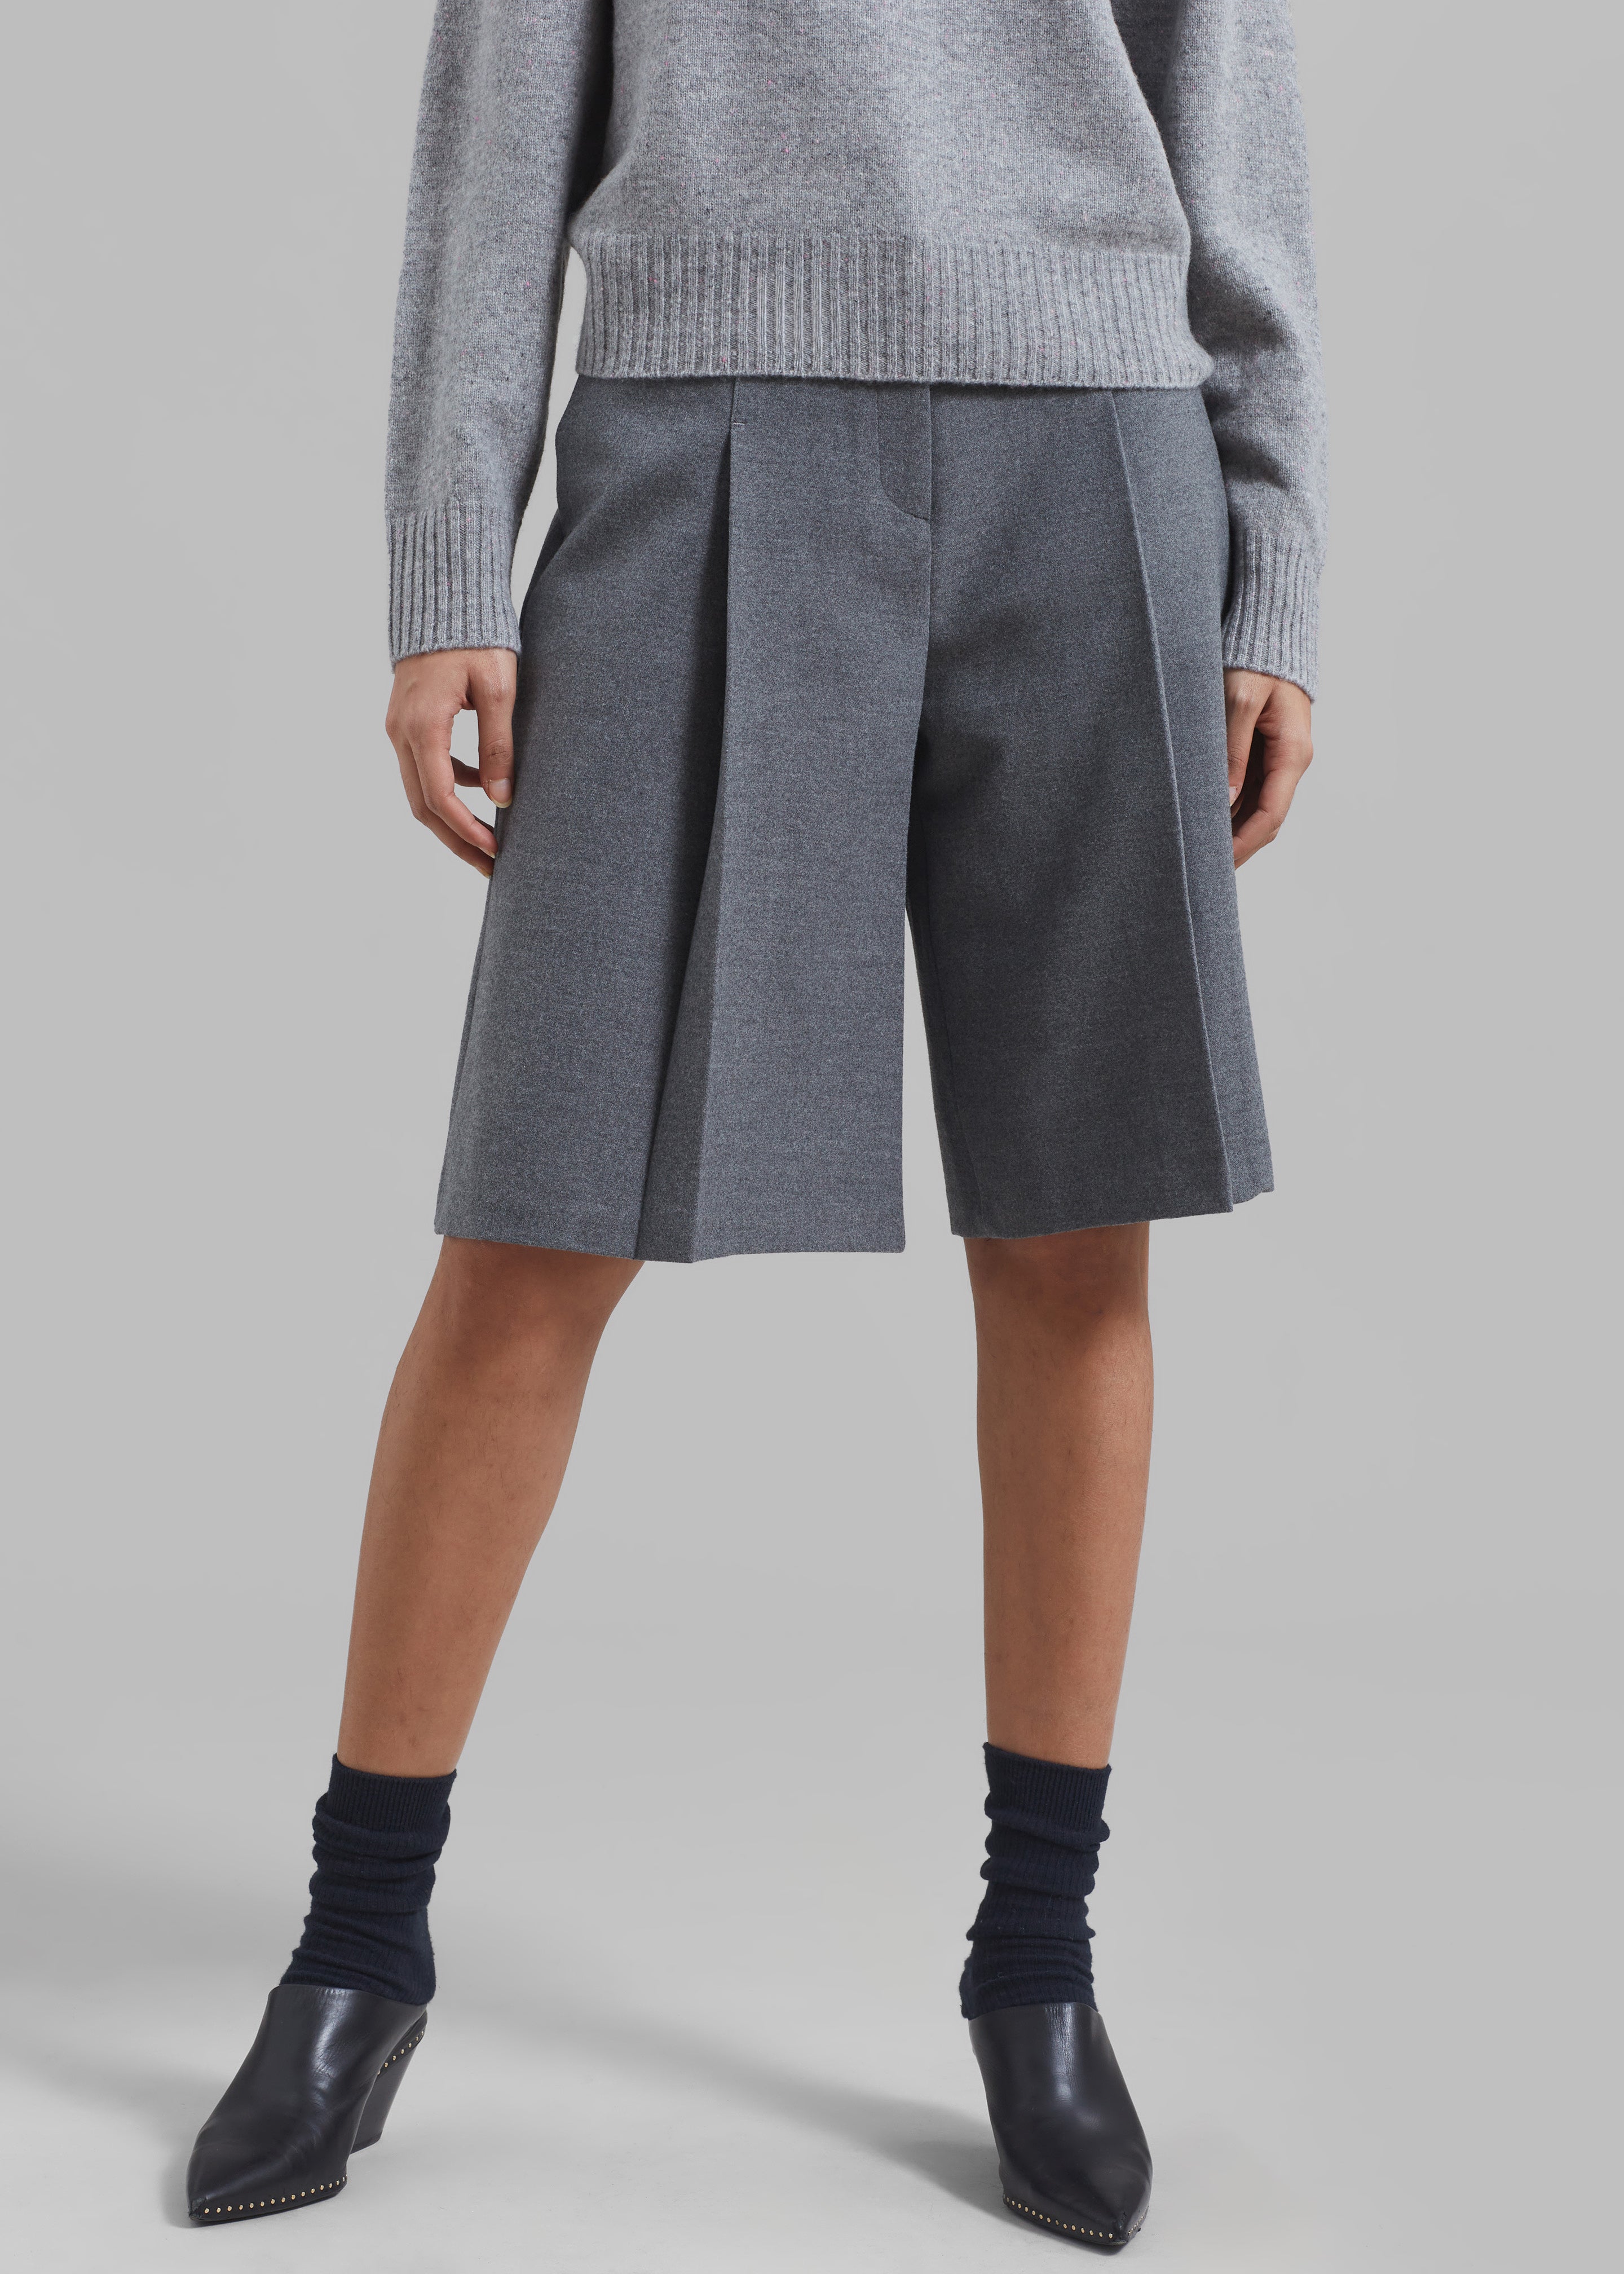 Austen Bermuda Shorts - Grey - 1